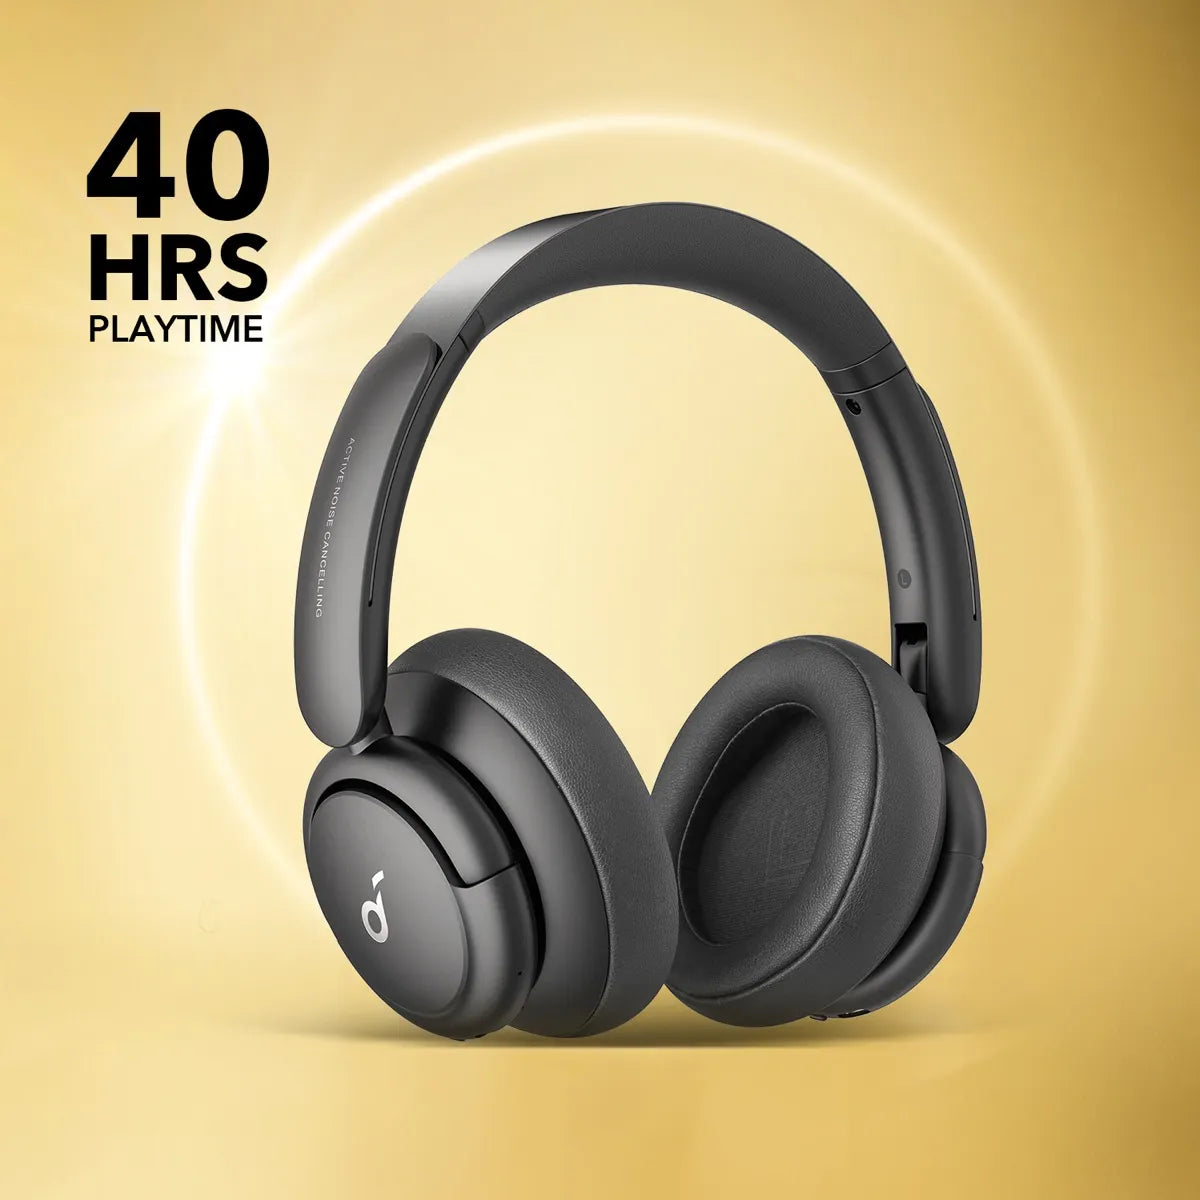 Anker Soundcore Life Q35 Active Noise Cancelling Headphones